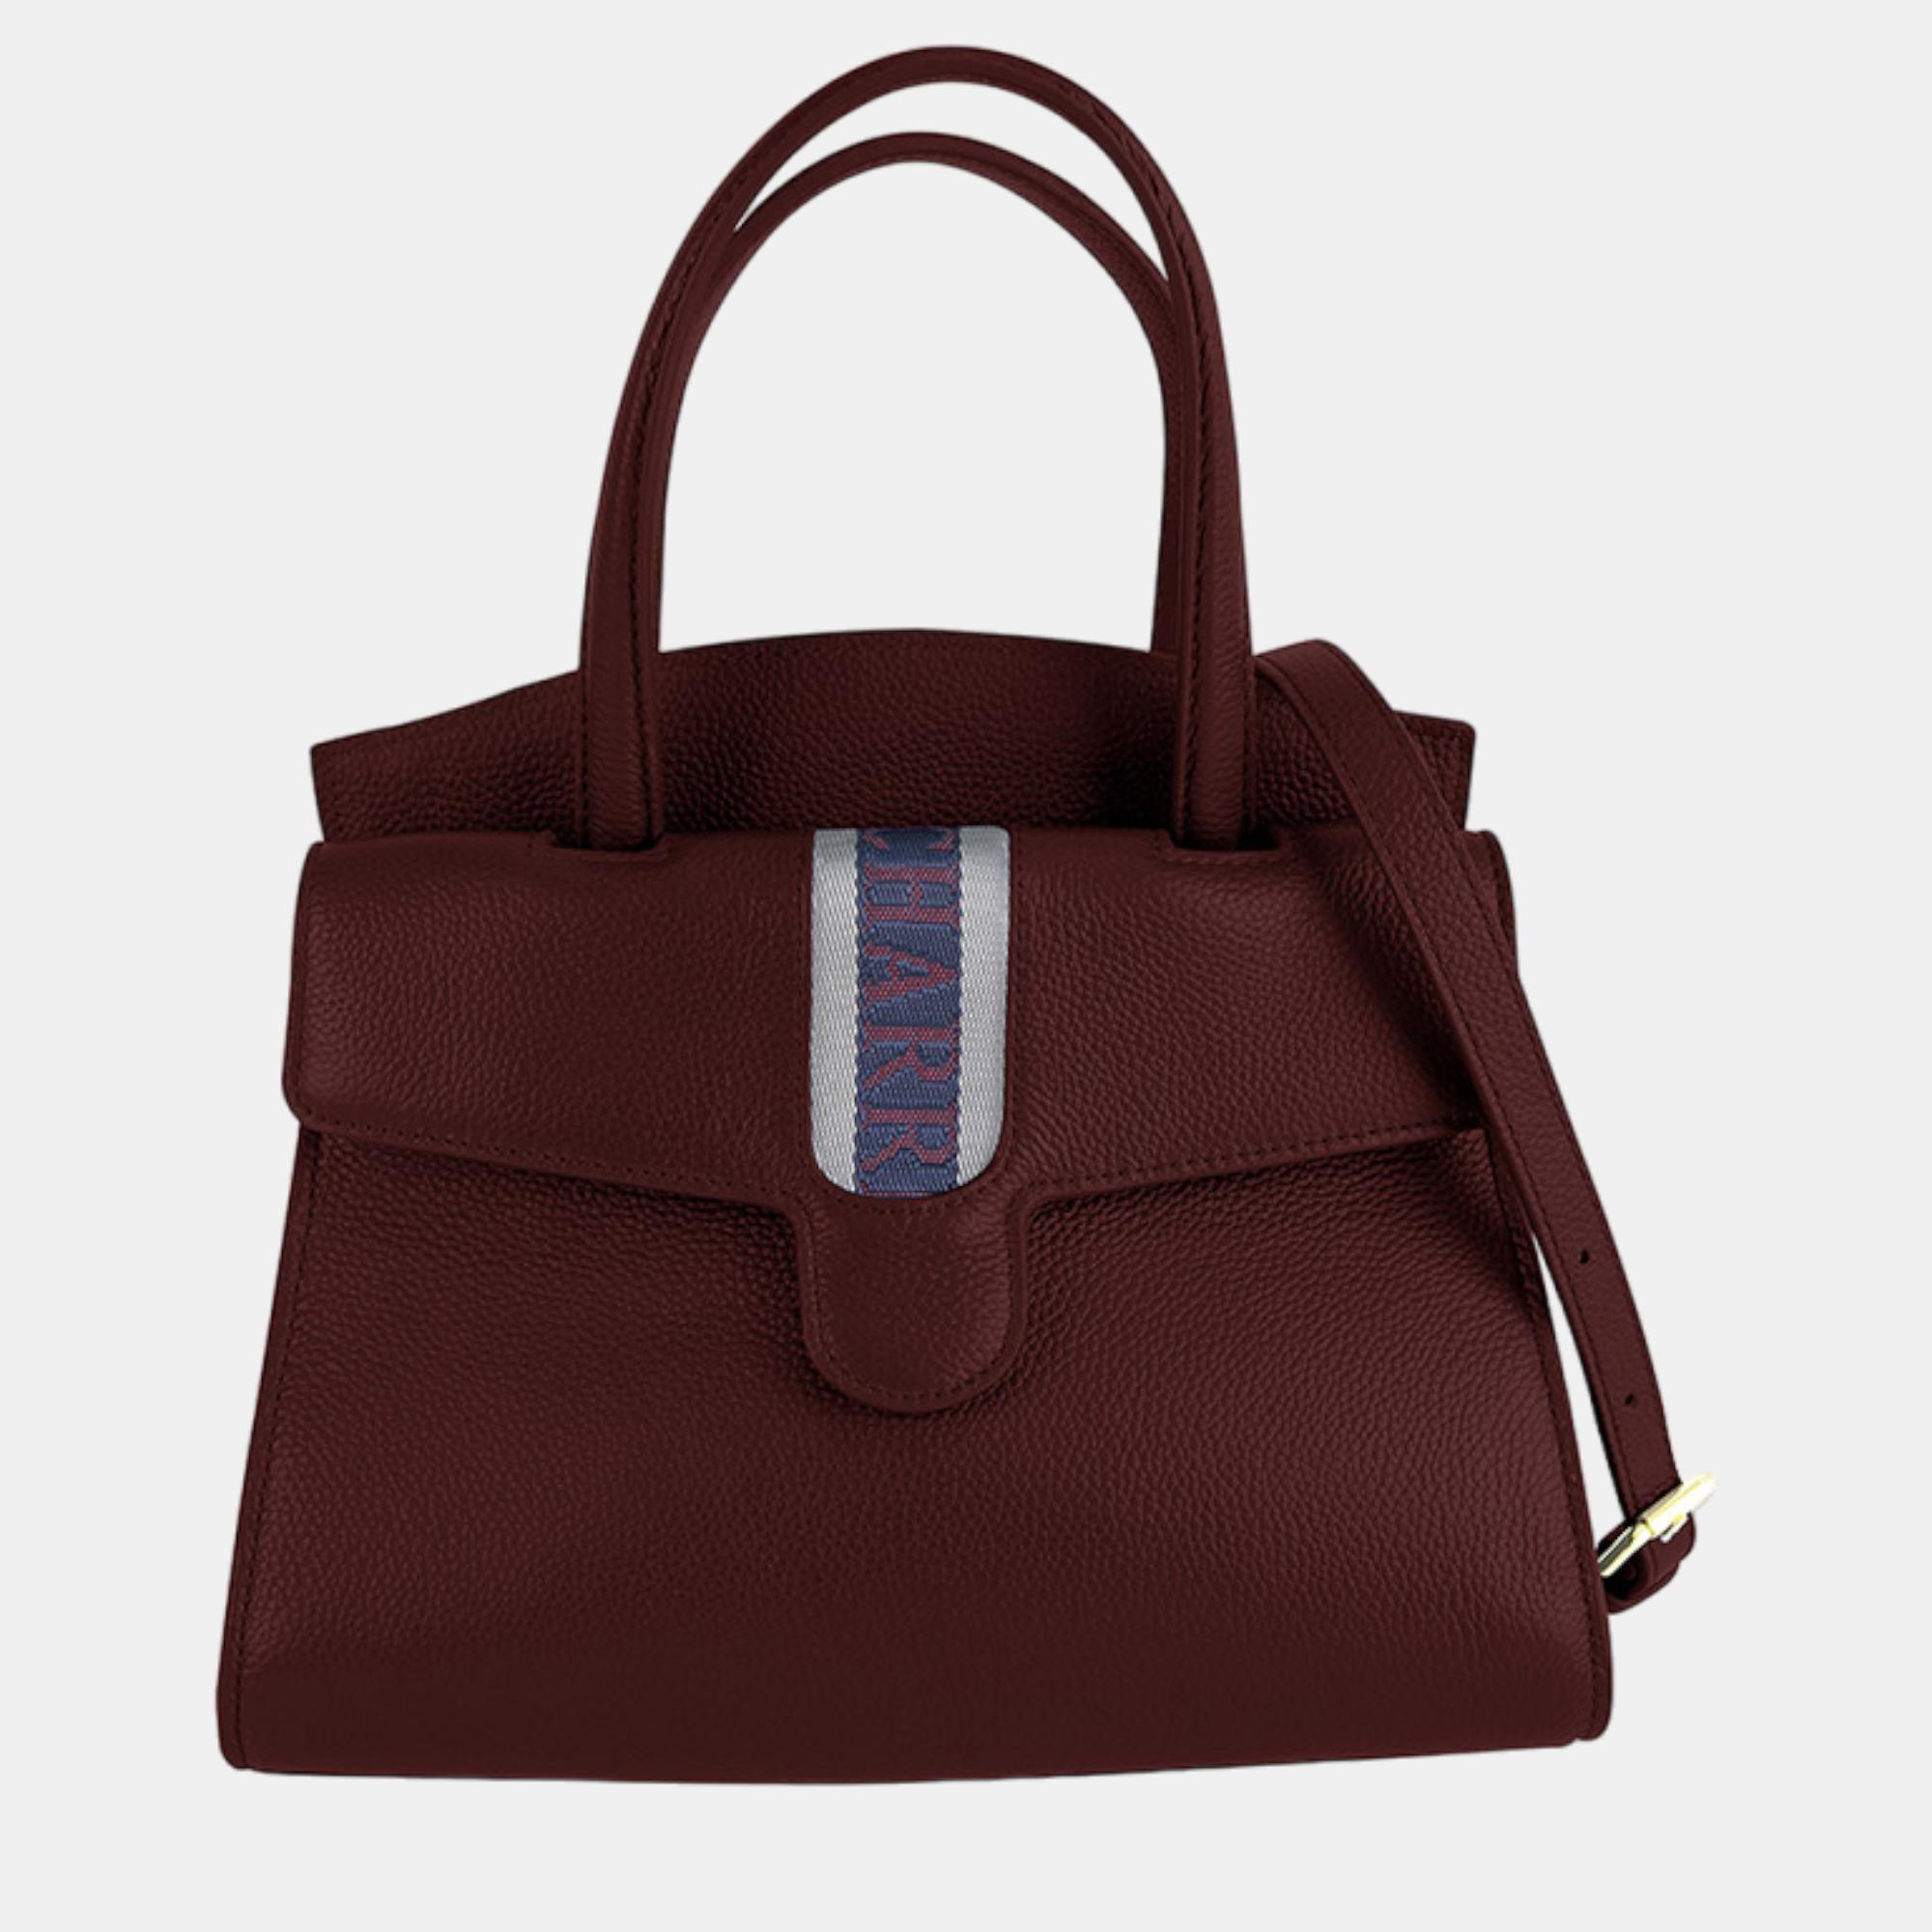 Charriol bordeaux leather deauville handbag